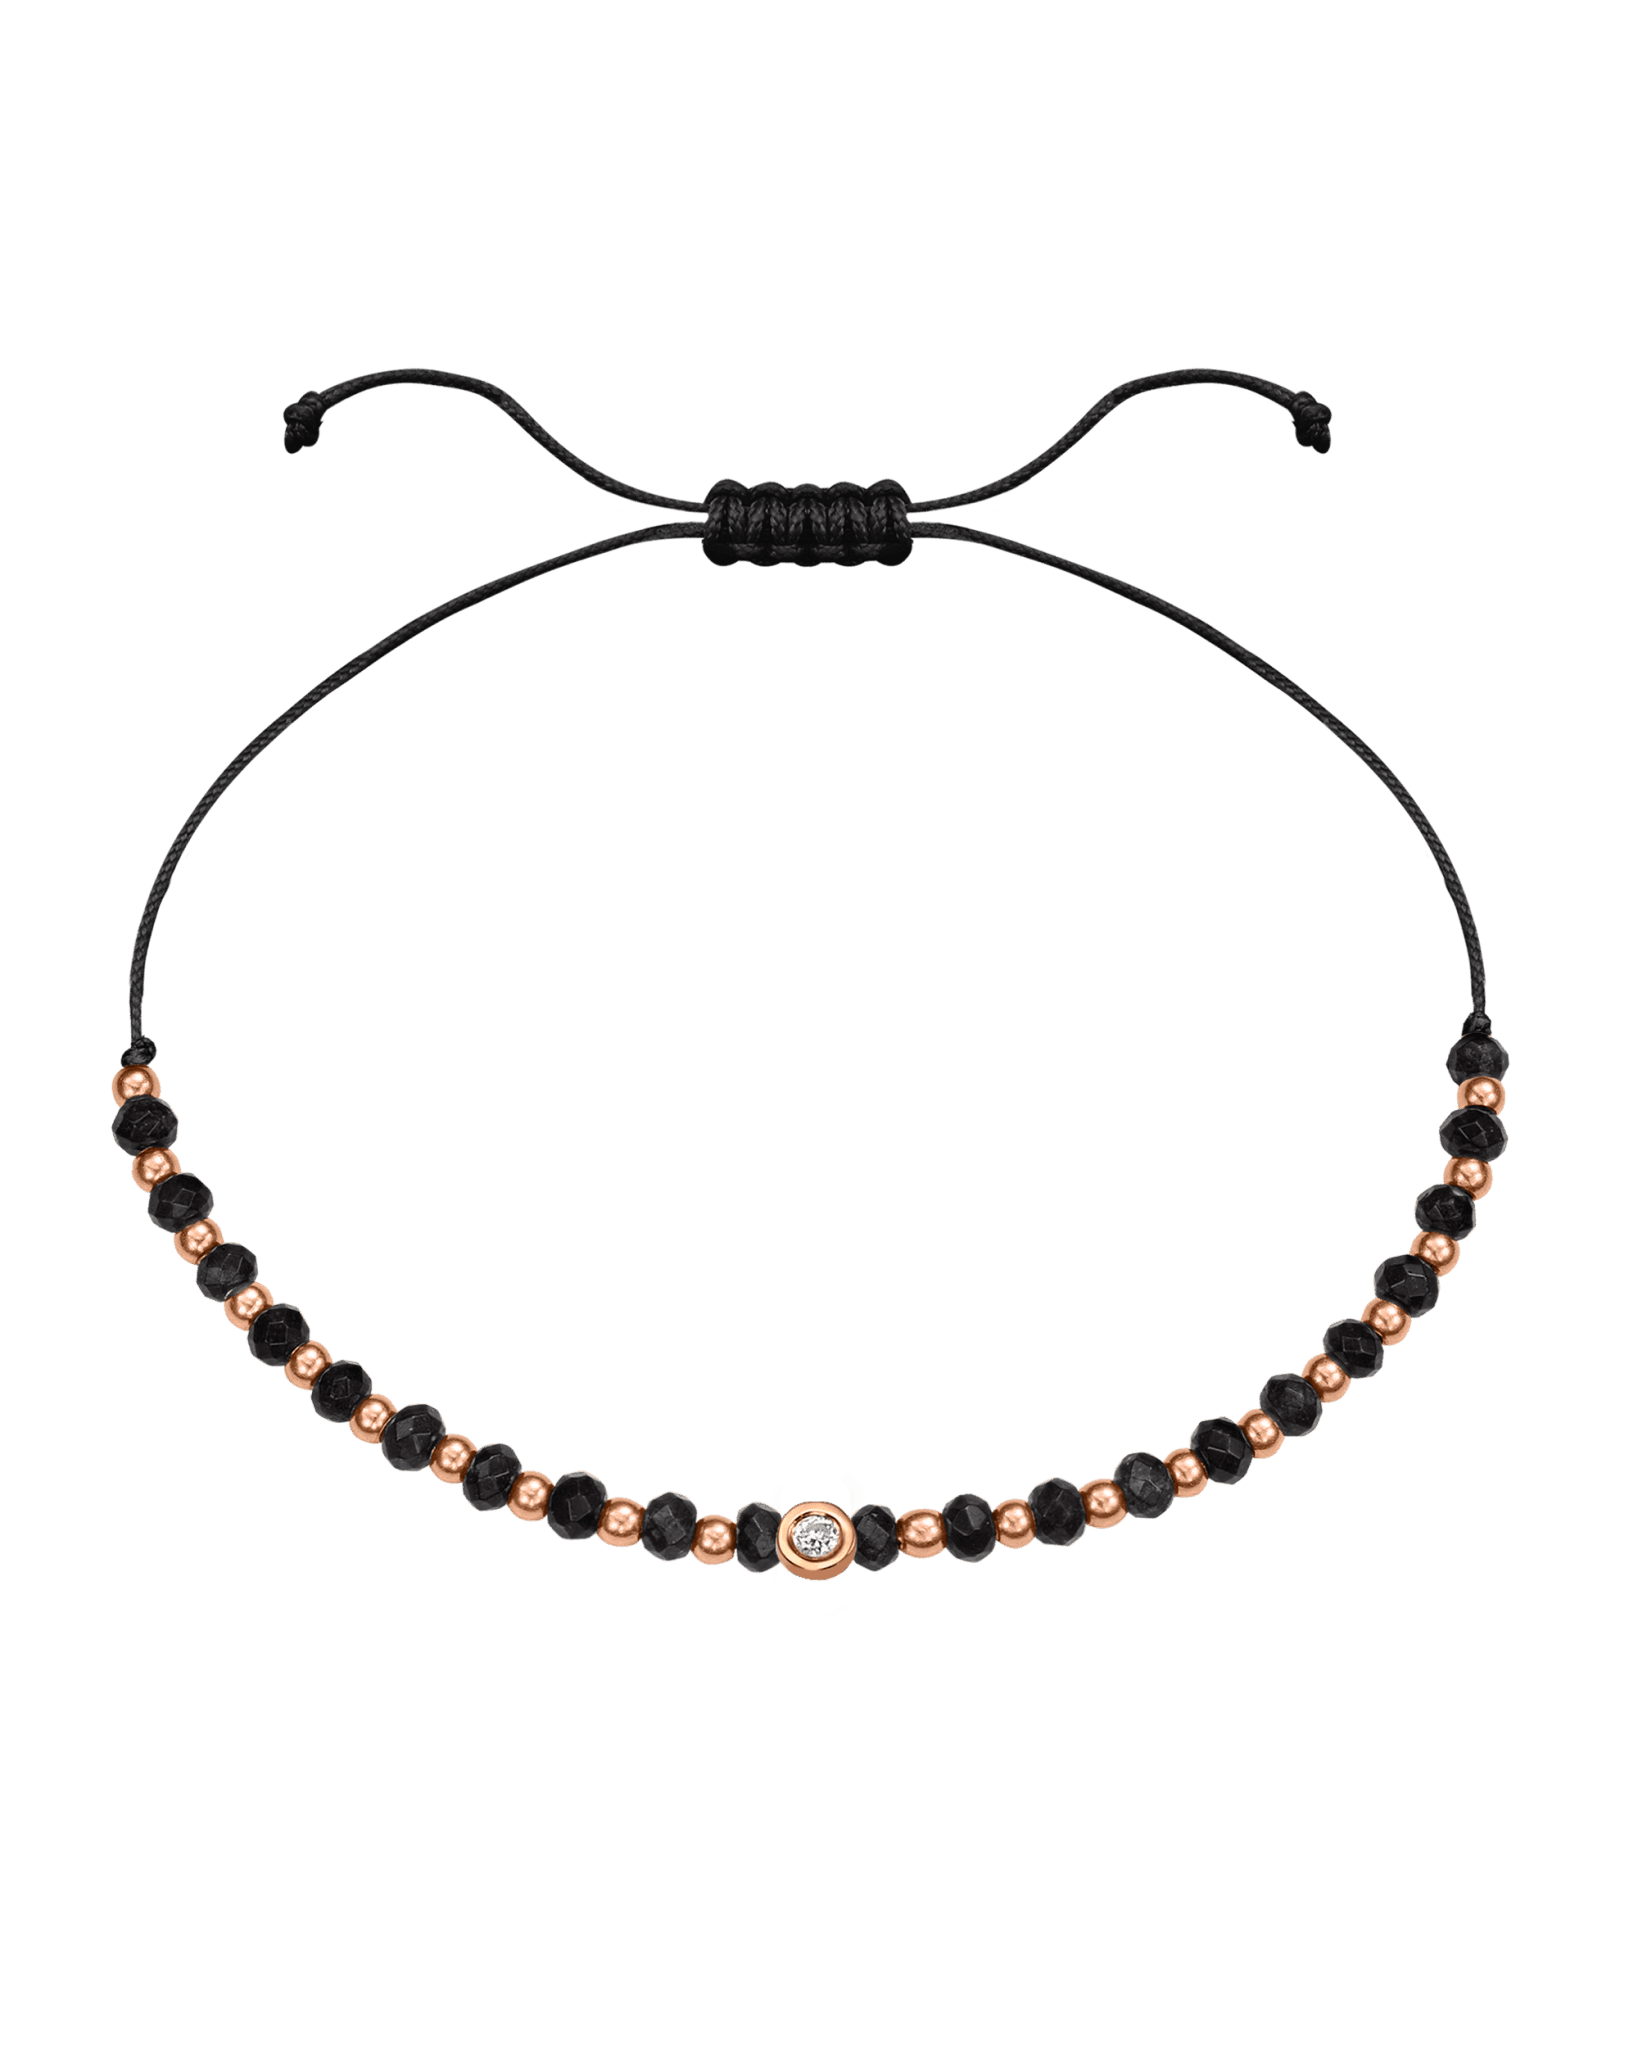 Black Onyx Gemstone String of Love Bracelet for Protection - 14K Rose Gold Bracelets 14K Solid Gold Black Small: 0.03ct 